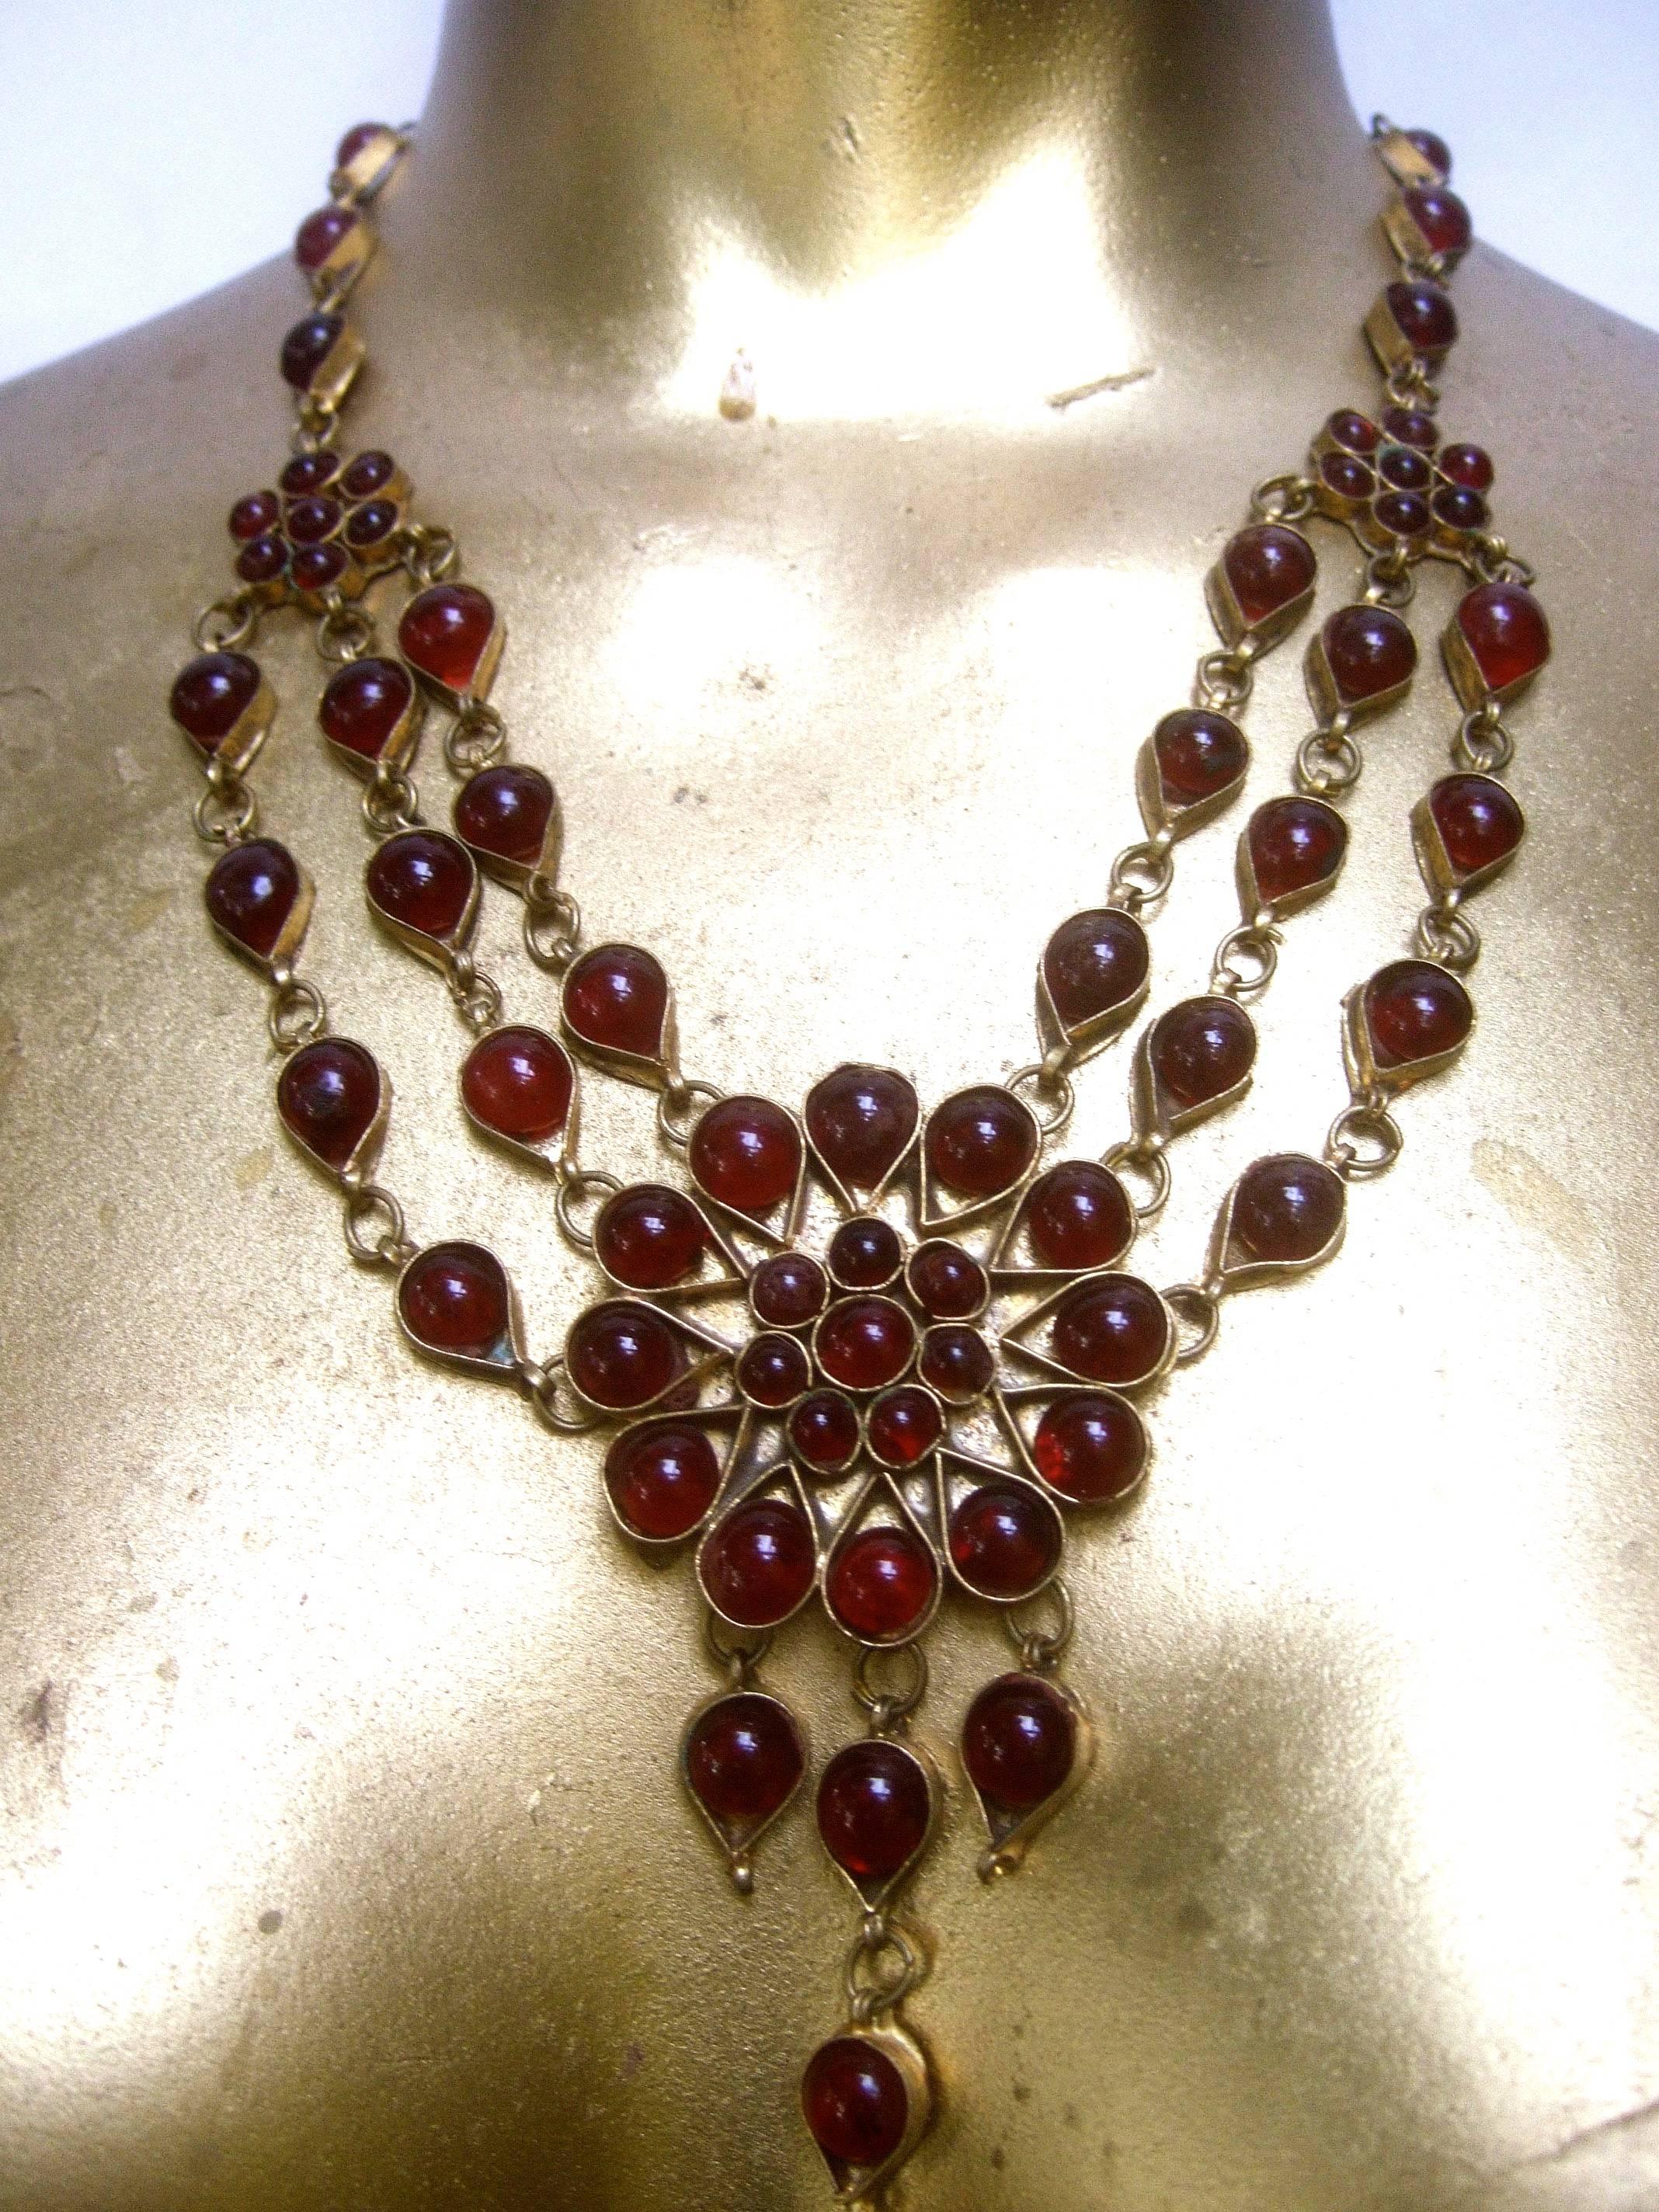 Collier ras du cou exotique en verre cabochon cranberry des années 1980
Le collier artisanal ethnique est agrémenté de grappes
de pierres de verre d'un rouge profond

Le médaillon circulaire central est conçu avec trois
des rangées de montures en